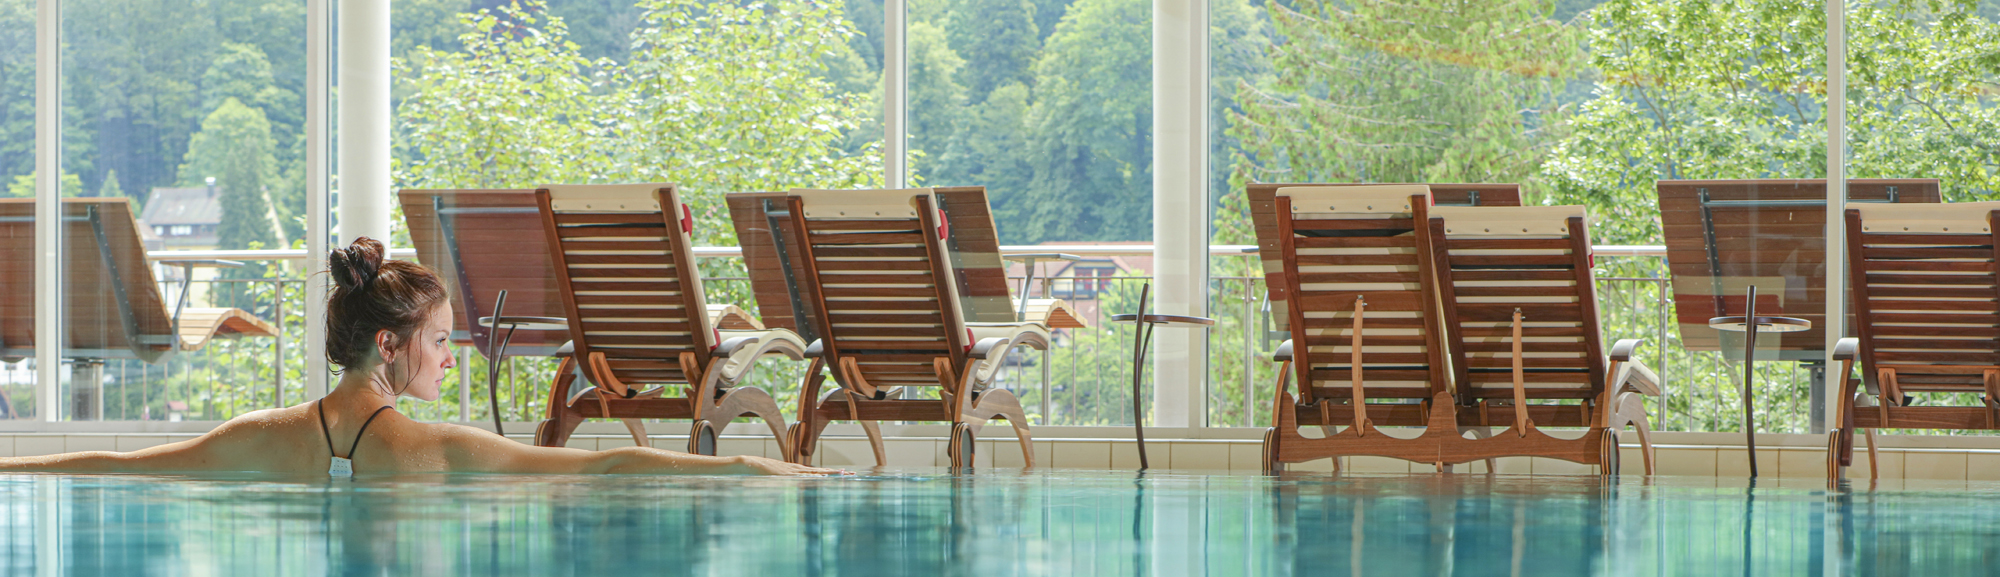 Eine Frau nimmt ein Bad im SPA, Wellness, Pool Bereich, vor Liegestühlen und grüner Kulisse im Hotel Schwarzwald Panorama.